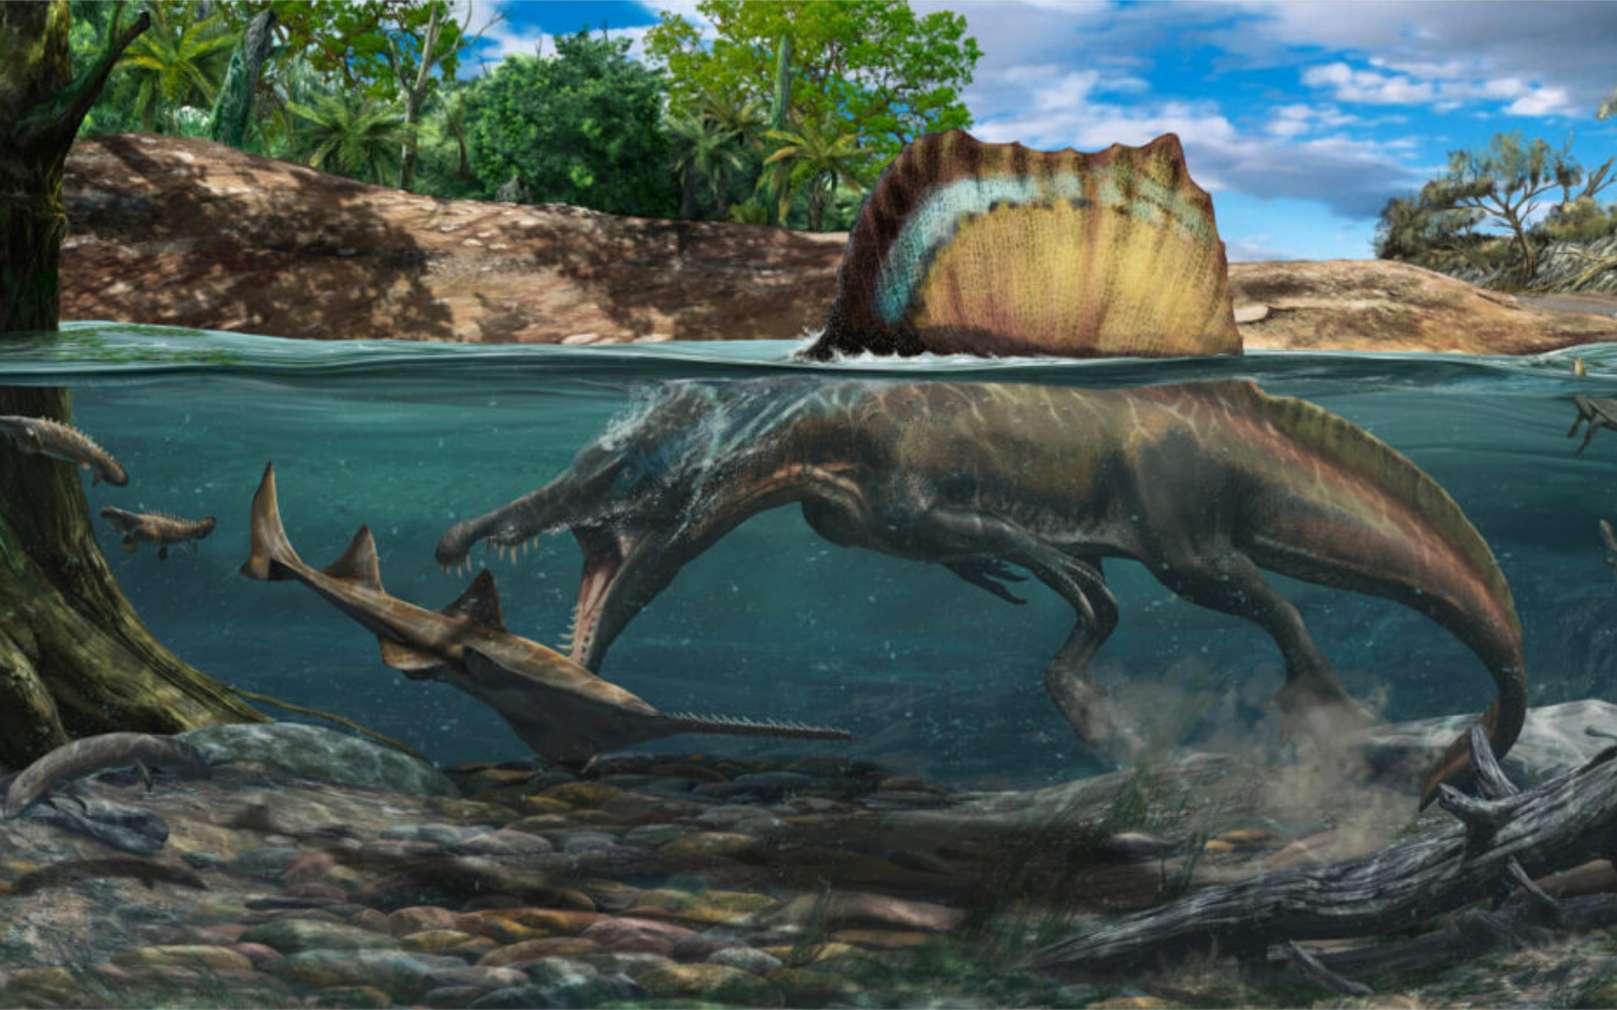 Vue d'artiste de Spinosaurus chassant un poisson-scie tout en nageant grâce à ses pattes palmées, sa queue en forme de nageoire et son importante densité osseuse. © Davide Bonadonna